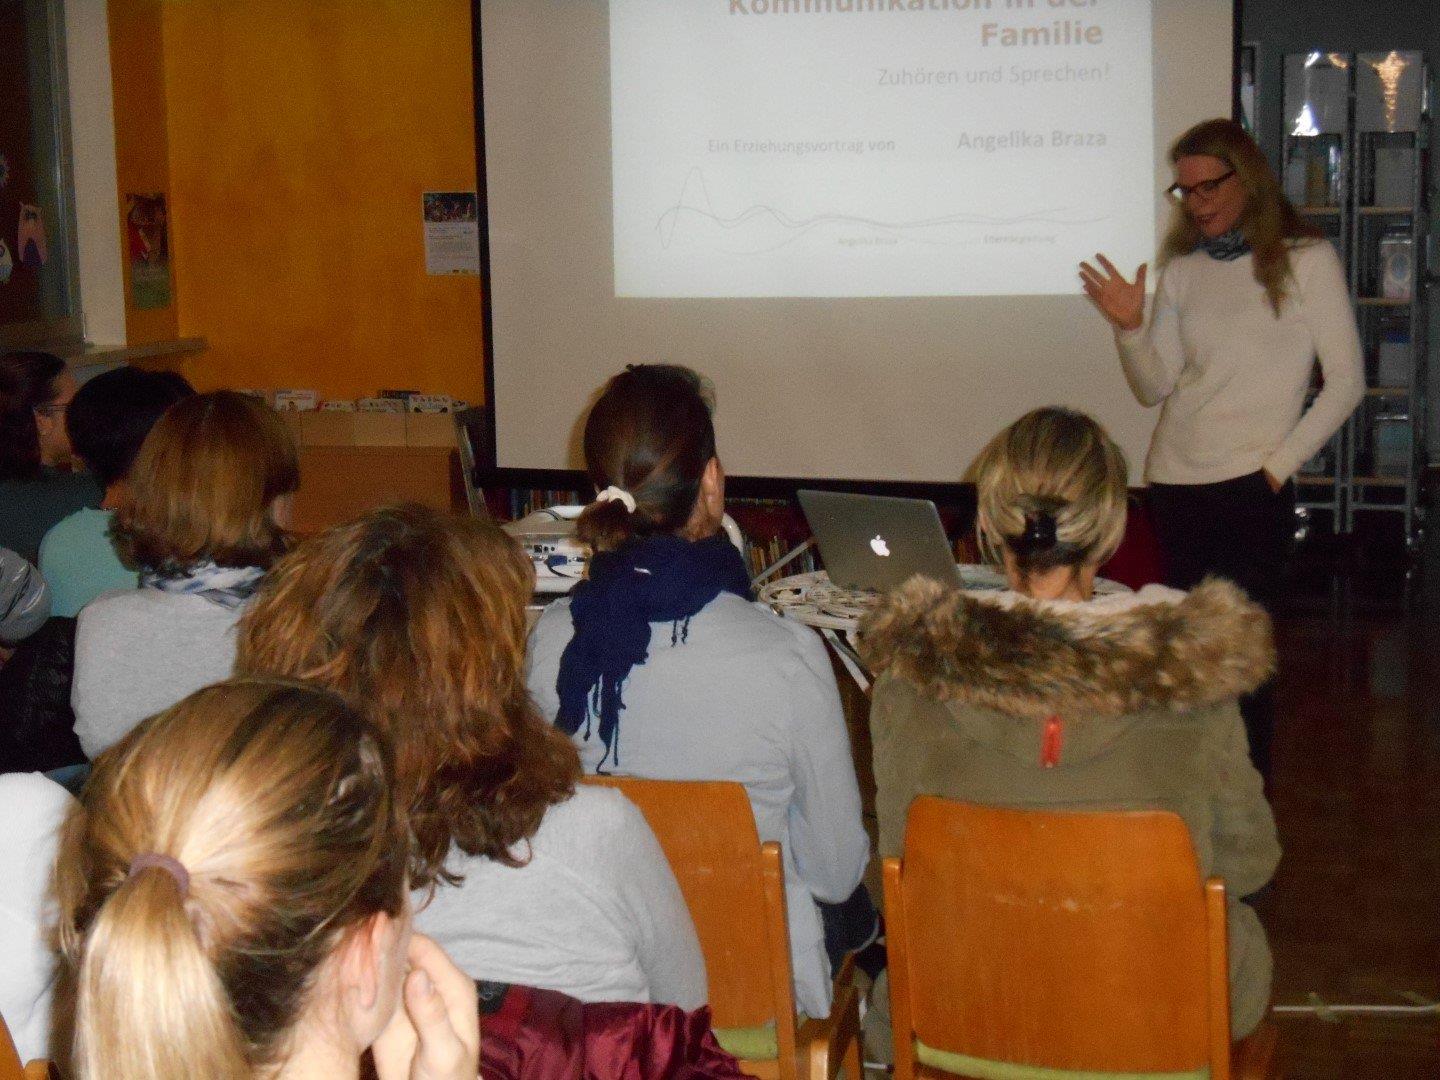 Erziehungsexpertin Angelika Braza bei ihrem Vortrag in Altach